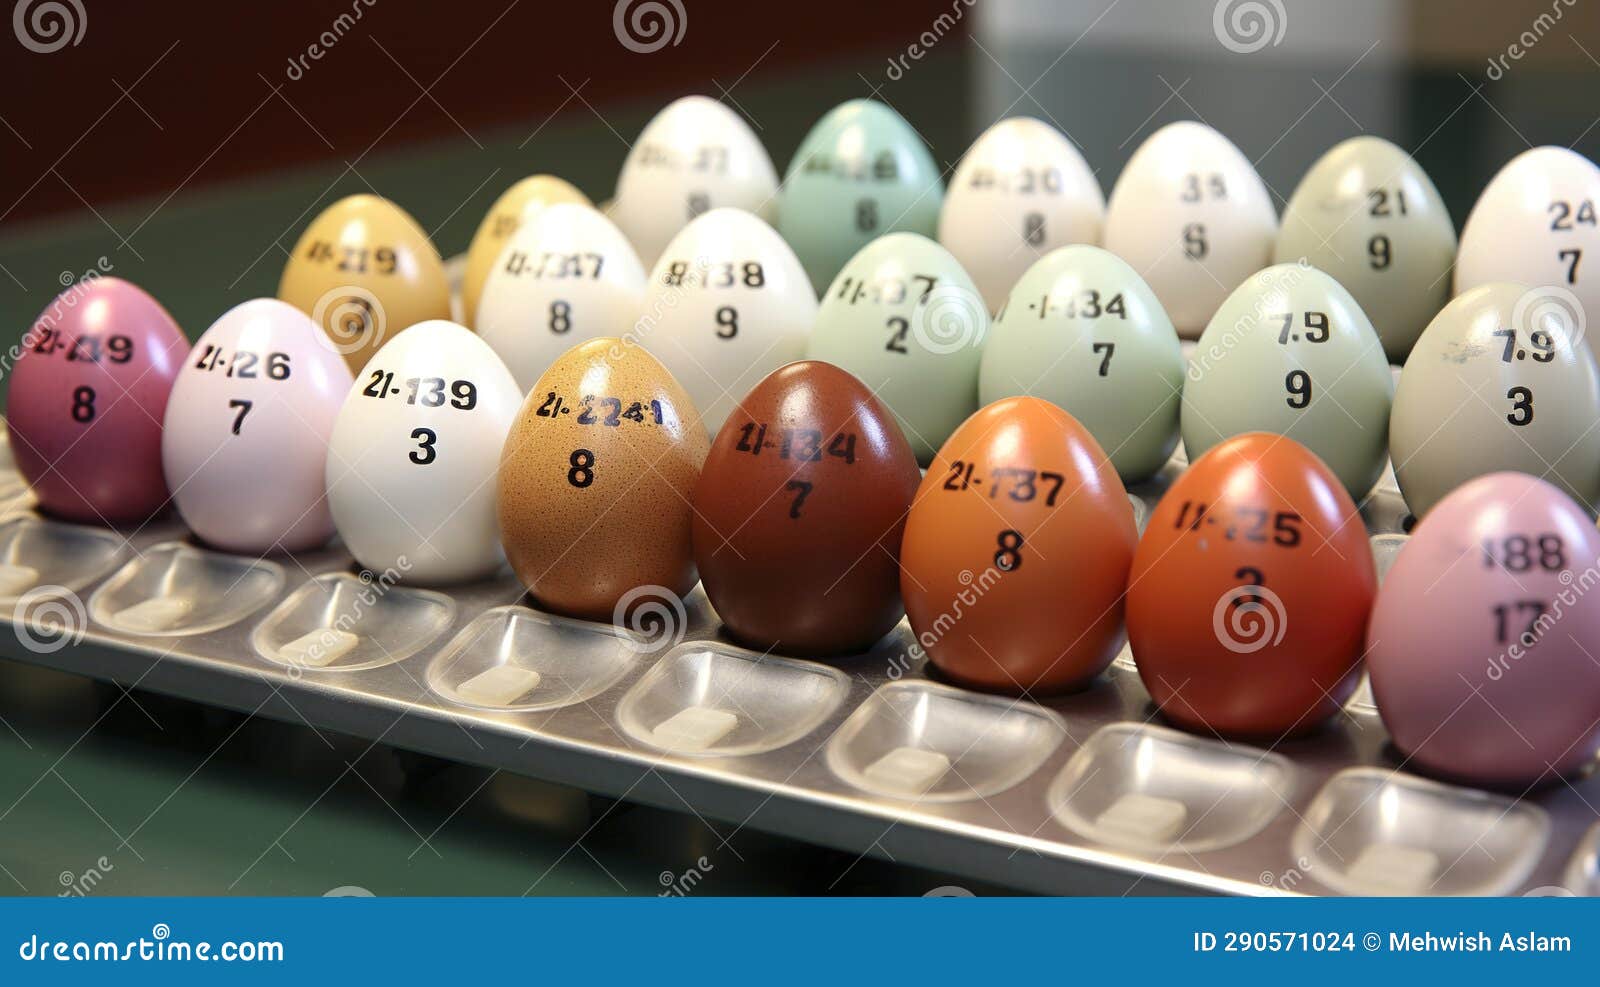 Egg Grading Scale